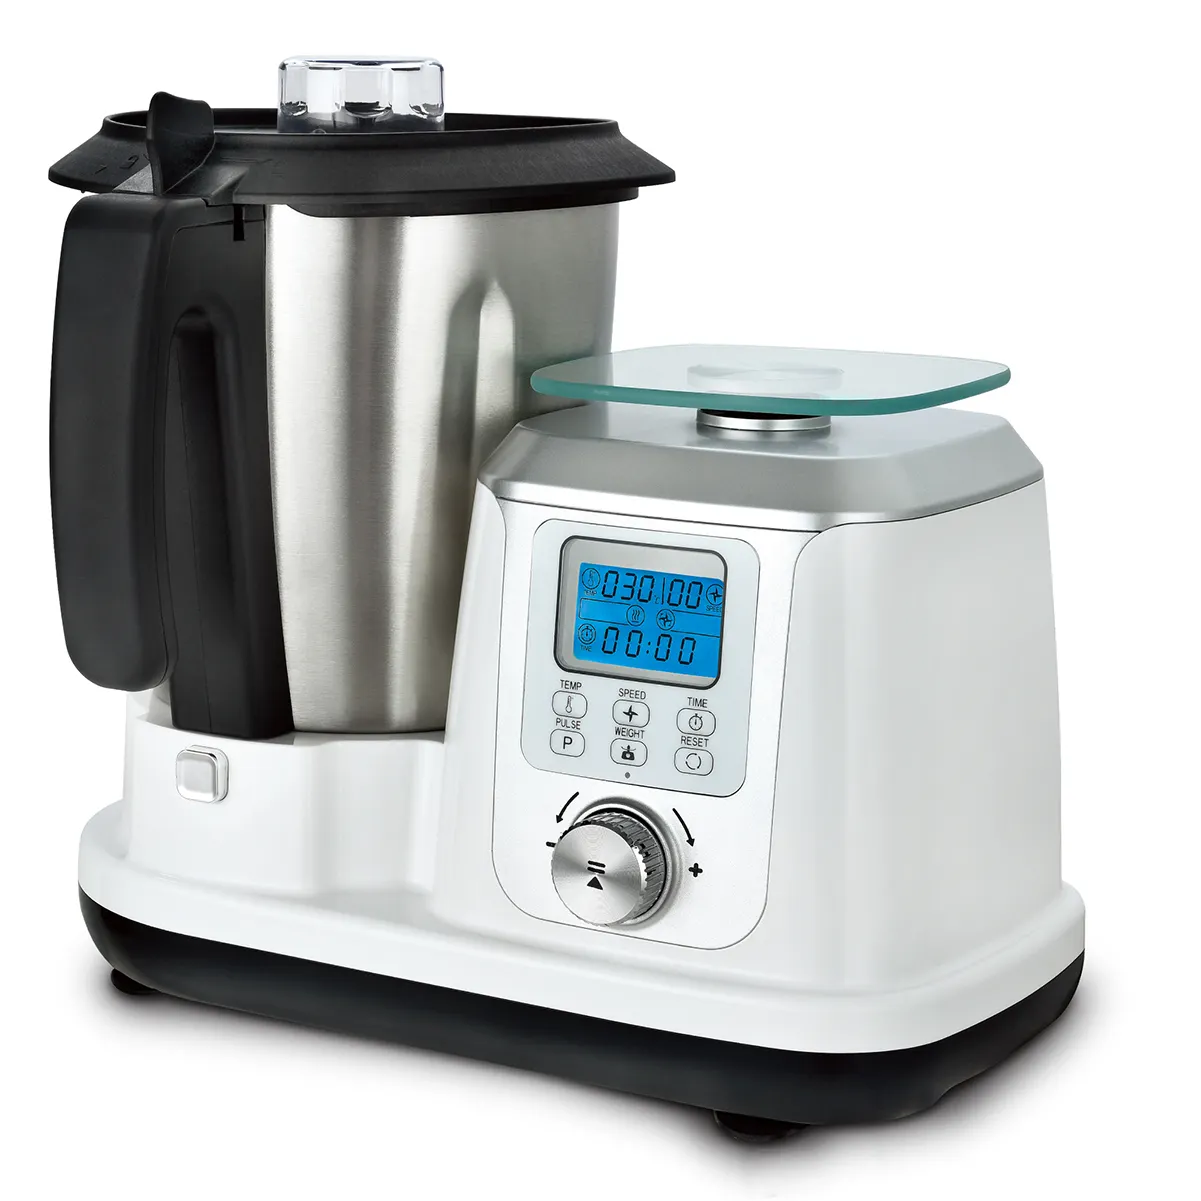 Processador de alimentos, robô de alta qualidade, máquina inteligente de cozinha multifuncional para fazer sopa.